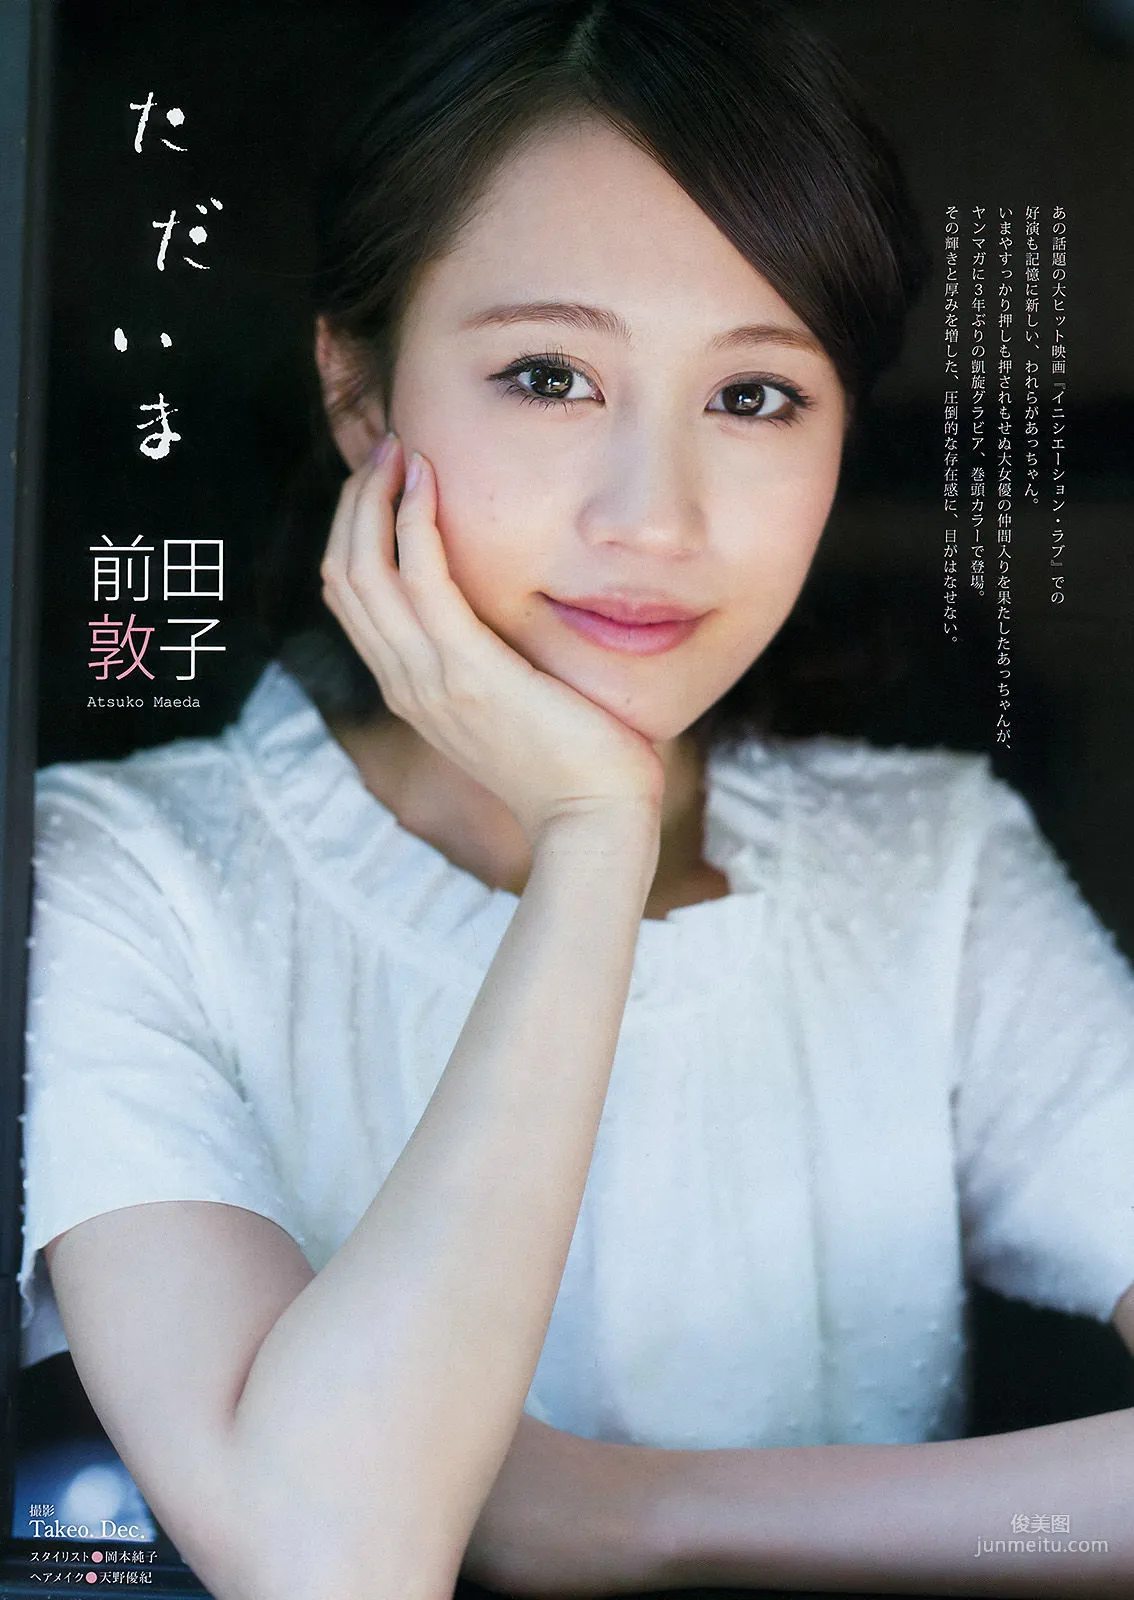 [Young Magazine] 前田敦子 小間千代 2015年No.34 写真杂志2